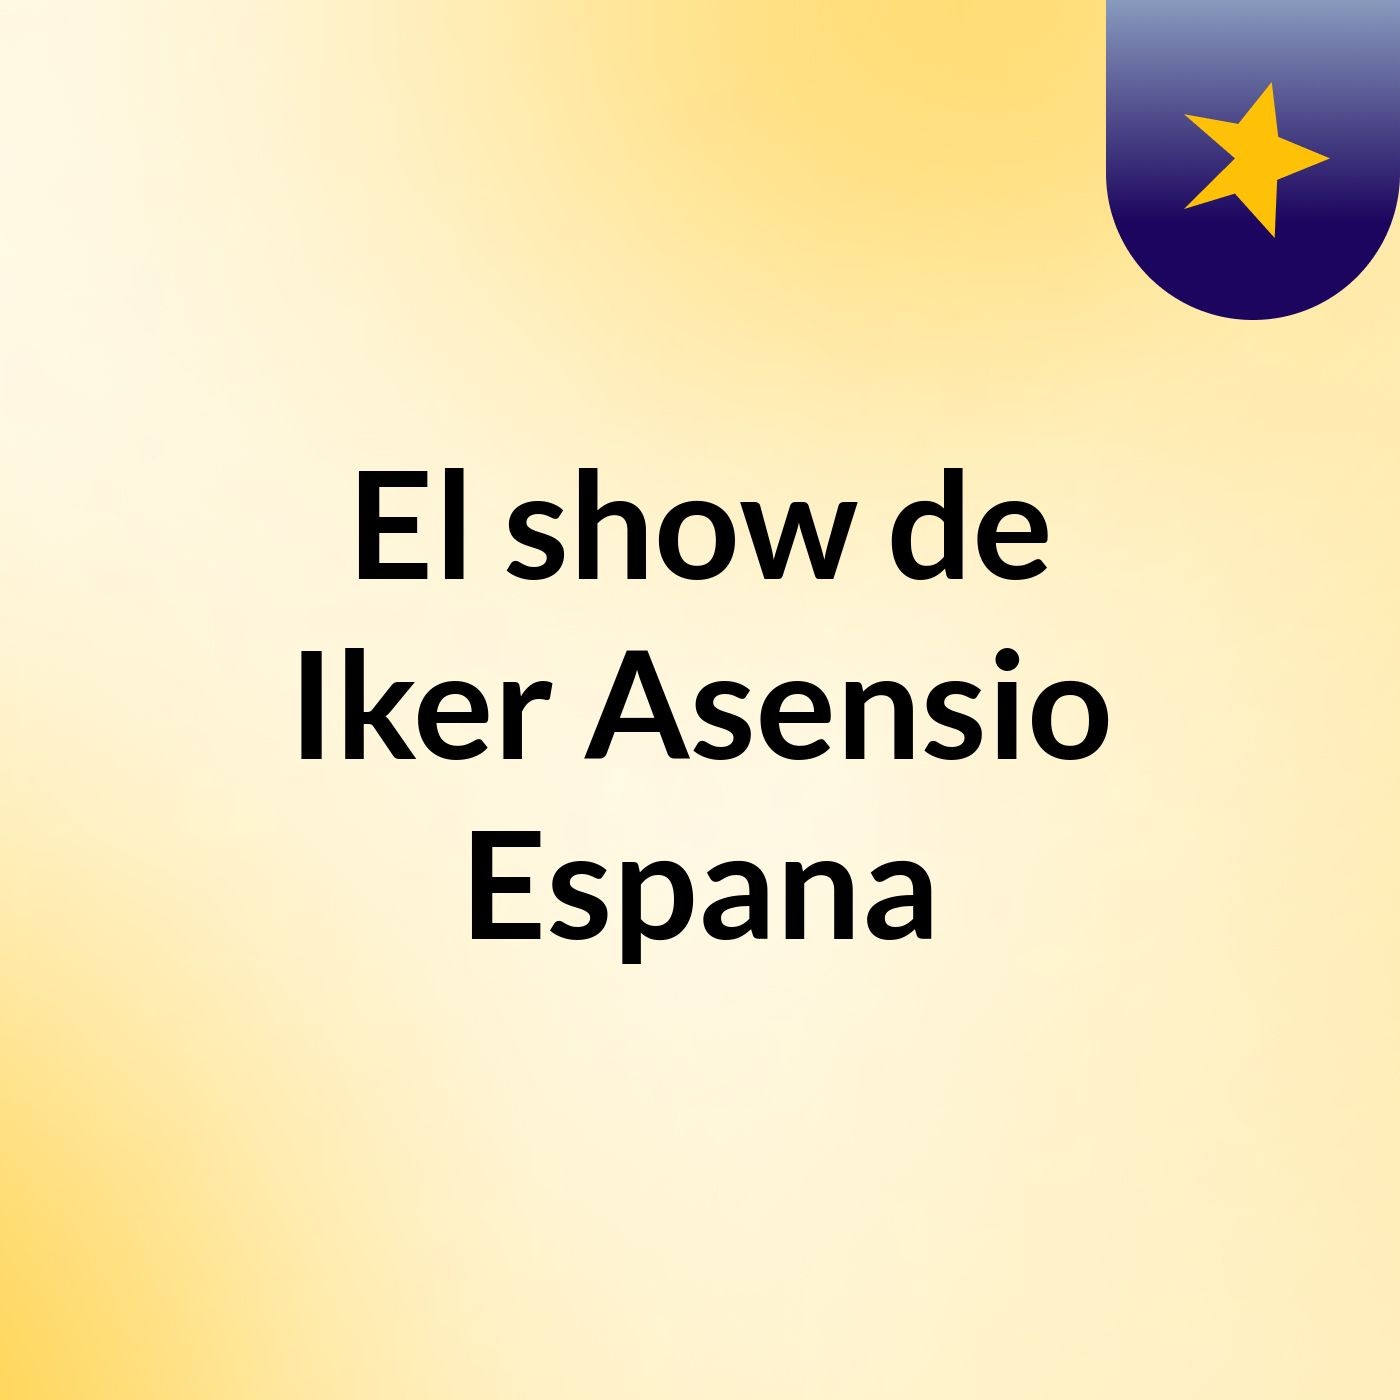 El show de Iker Asensio Espana